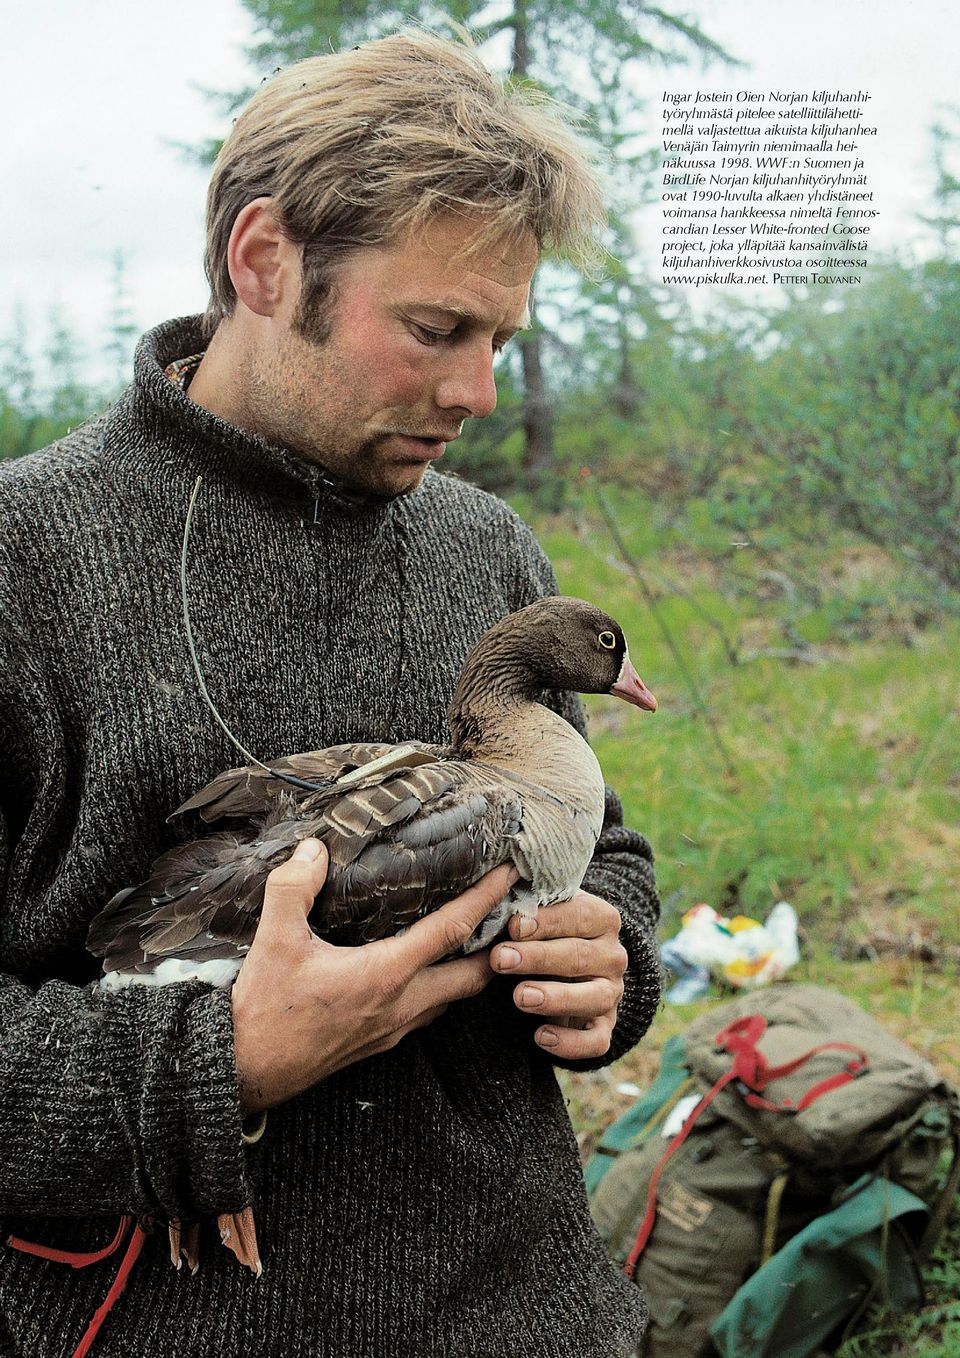 WWF:n Suomen ja BirdLife Norjan kiljuhanhityöryhmät ovat 1990-luvulta alkaen yhdistäneet voimansa